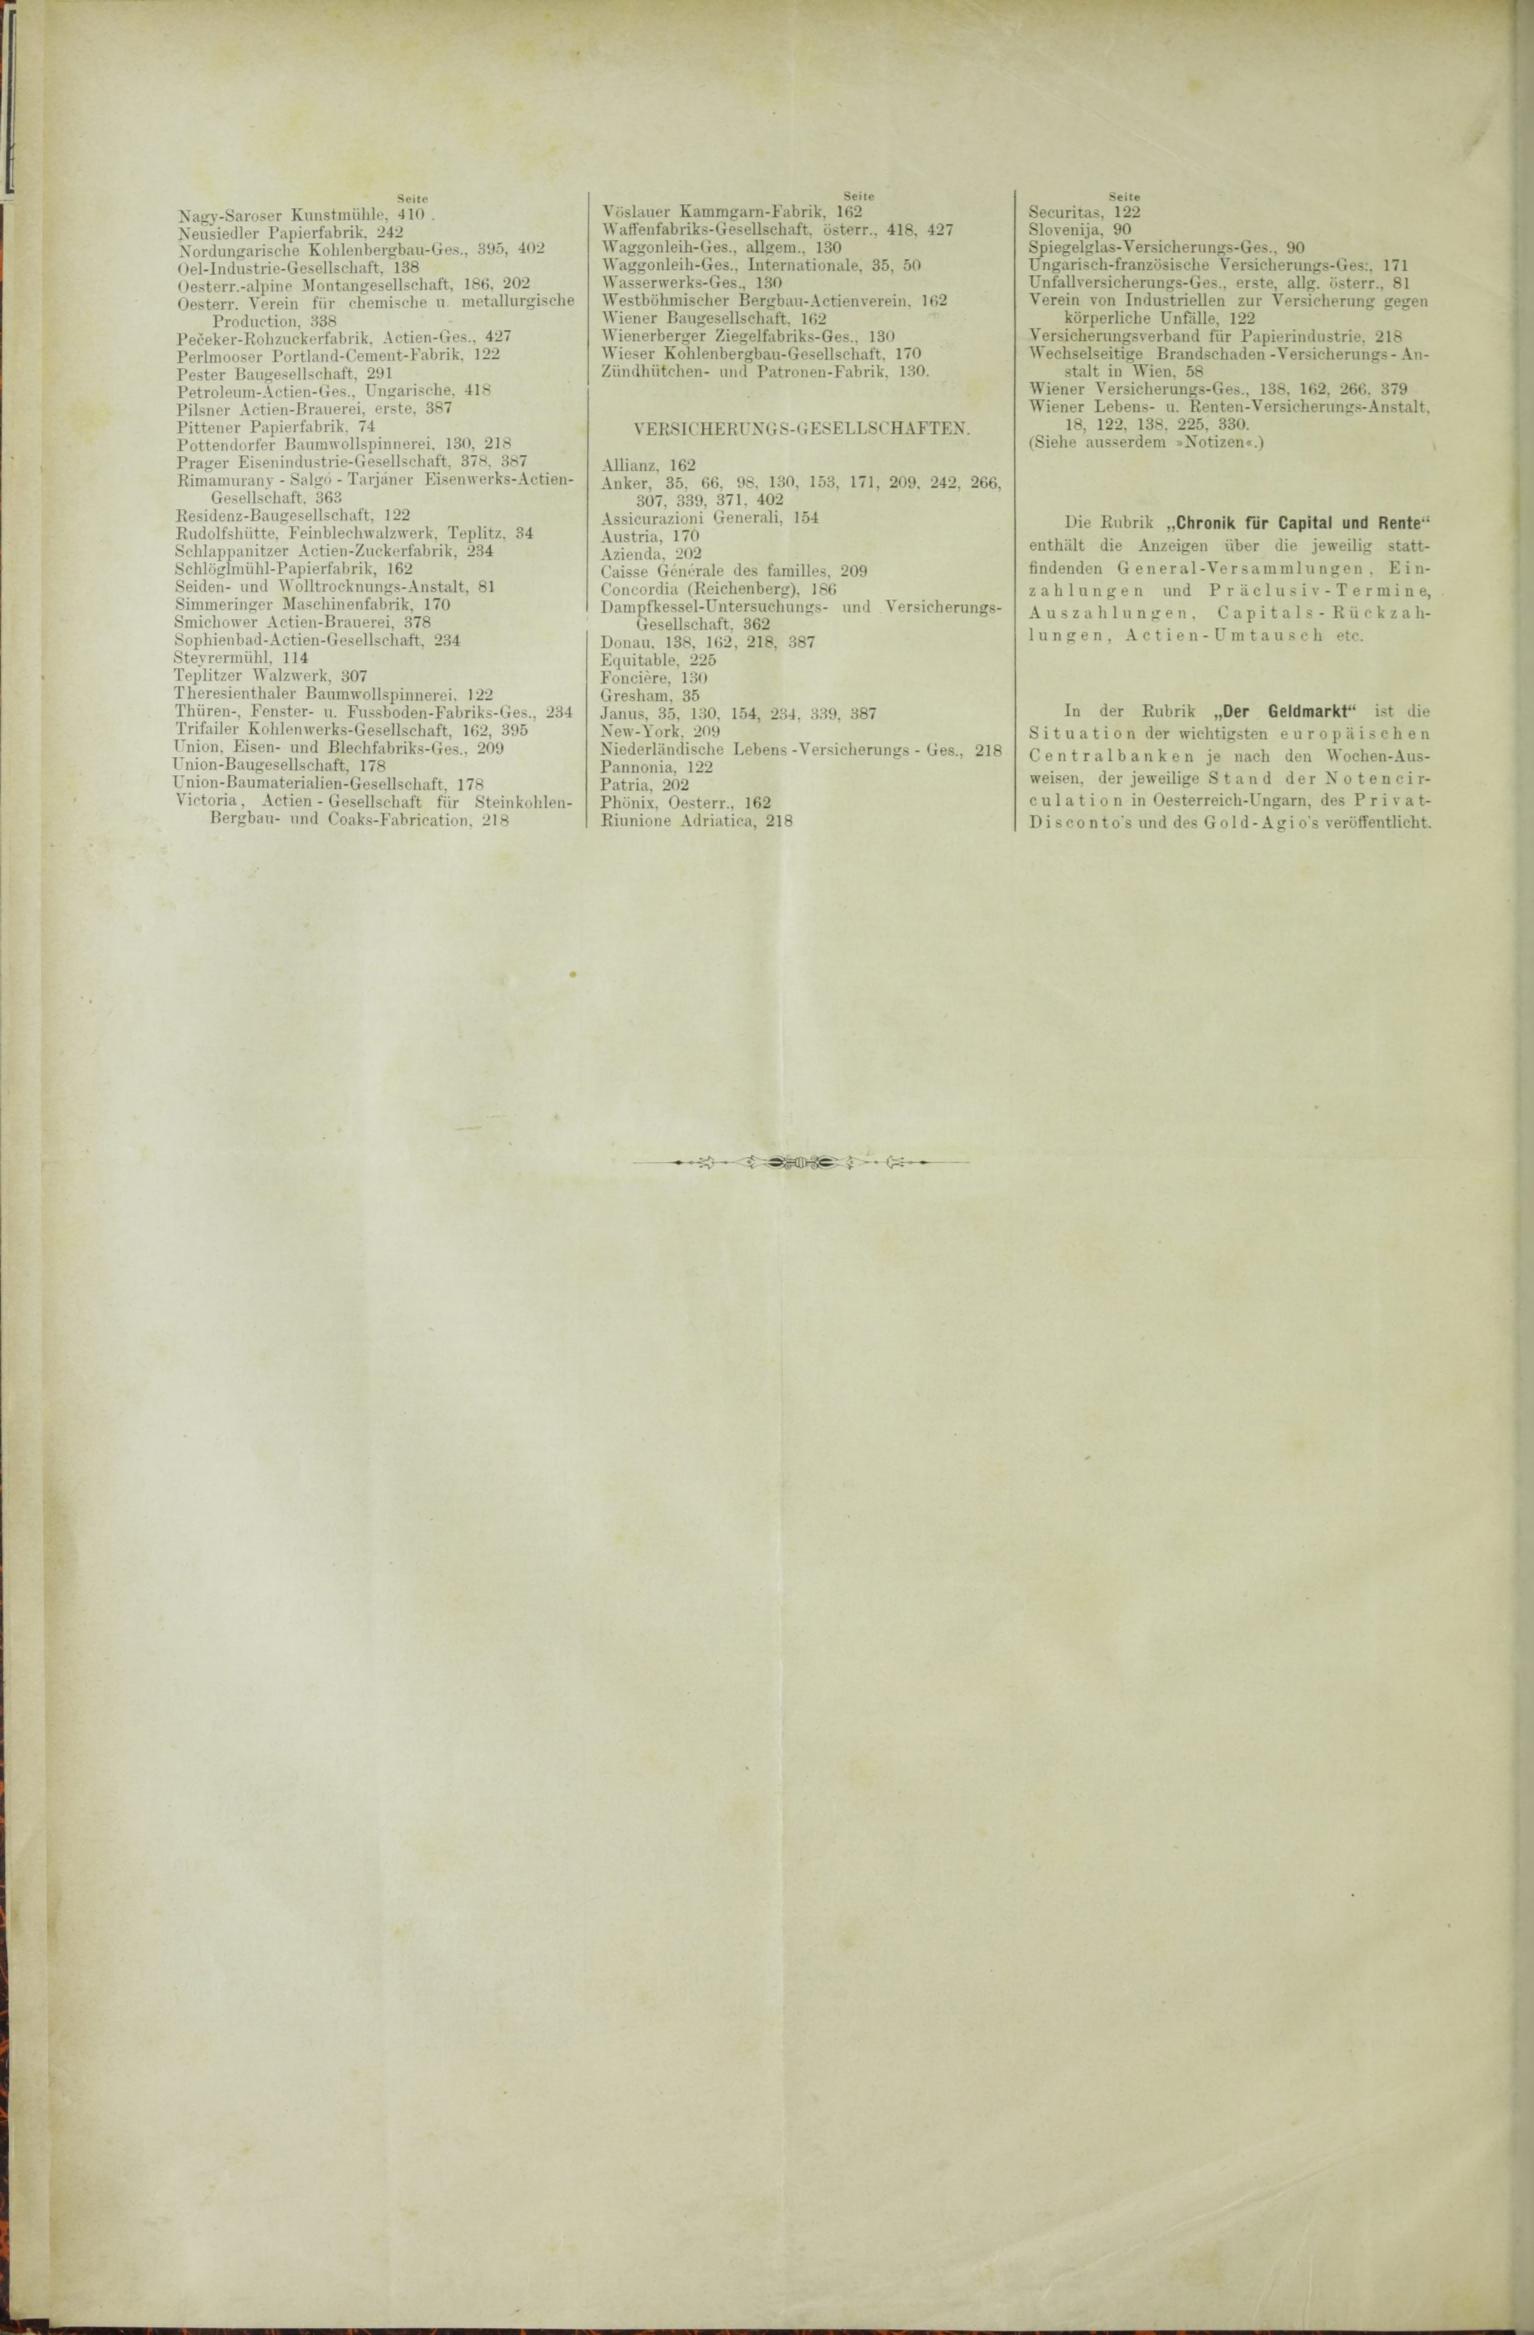 Der Tresor 29.10.1885 - Seite 12